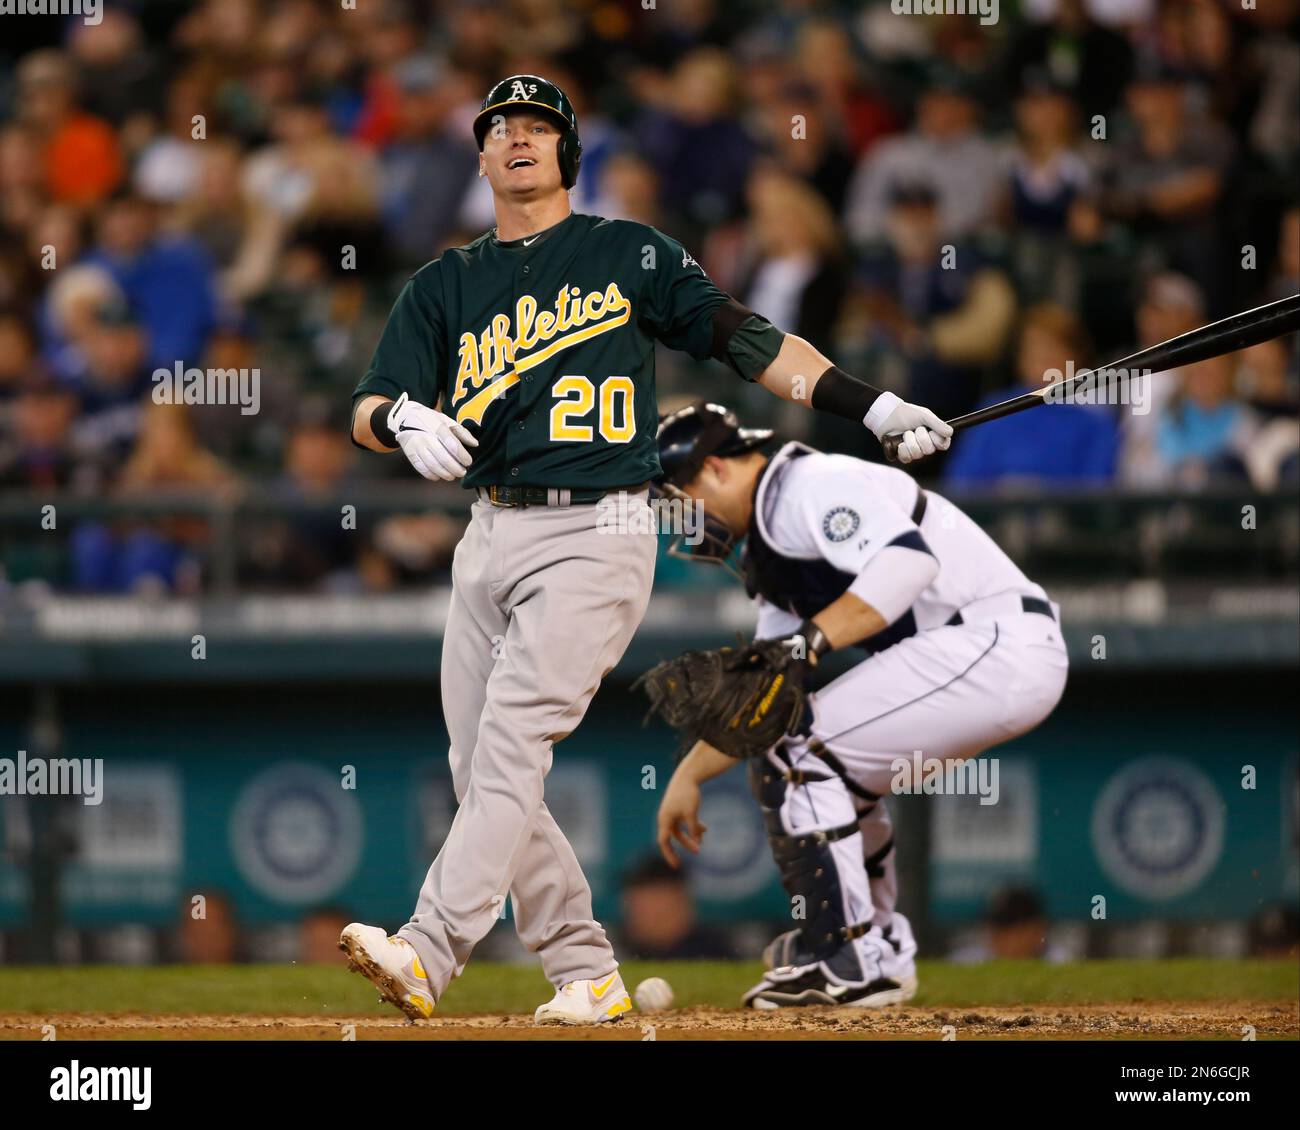 Oakland Athletics' Josh Donaldson reacts while batting while